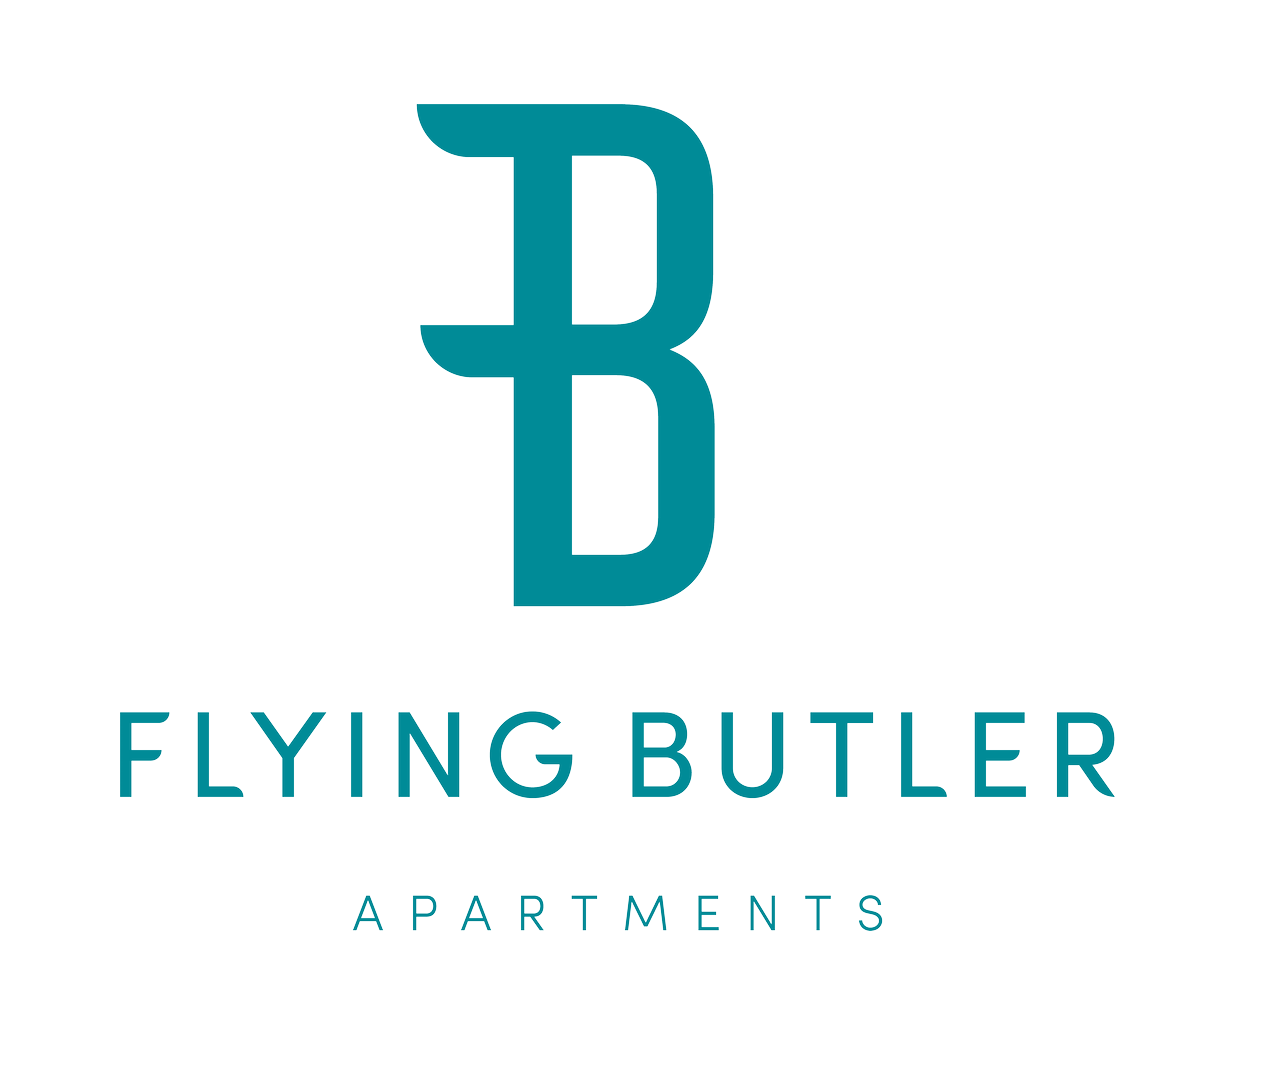 Flying Butler